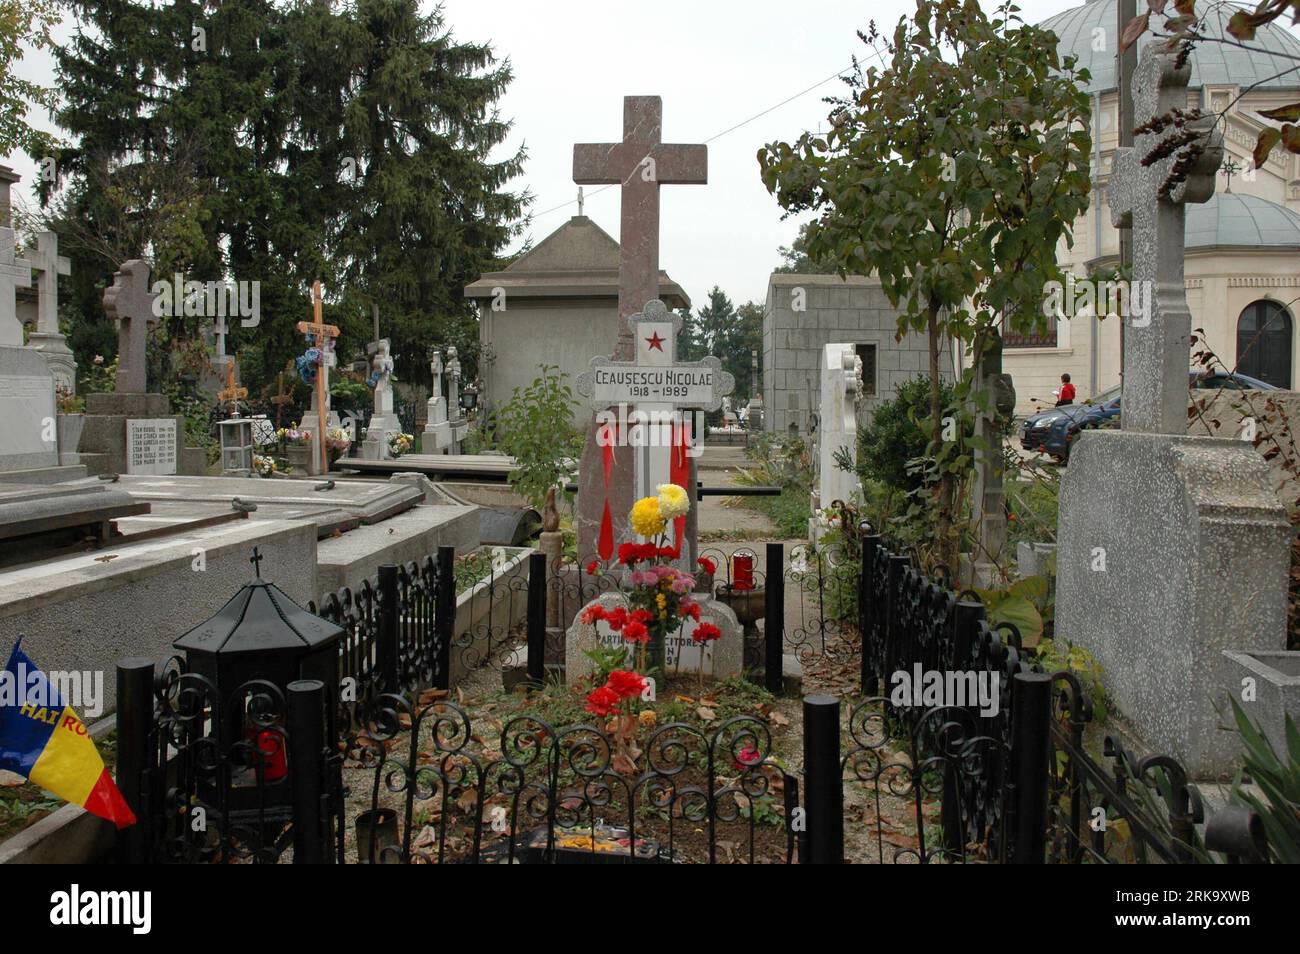 100721 -- BUKAREST, 21. Juli 2010 Xinhua -- Aktenfoto aufgenommen am 22. Oktober 2006 zeigt das Grab des ehemaligen rumänischen Führers Nicolae Ceausescu auf dem Ghencea-Friedhof im westlichen Bukarest, Rumänien, 21. Juli 2010. Rumänien exhumierte am Mittwoch die Überreste des ehemaligen Führers Nicolae Ceausescu und seiner Frau Elena, die im Dezember 1989 kurz nach dem Fall der Regierung Ceausescu hingerichtet wurden. DNA-Proben werden entnommen, um zu bestätigen, ob es sich bei den Überresten tatsächlich um die des Ceausescus handelt. Xinhua/Chen Jin gj 1REIMANIA-BUKAREST-CEAUSESCU-DNA PUBLICATIONxNOTxINxCHN Stockfoto